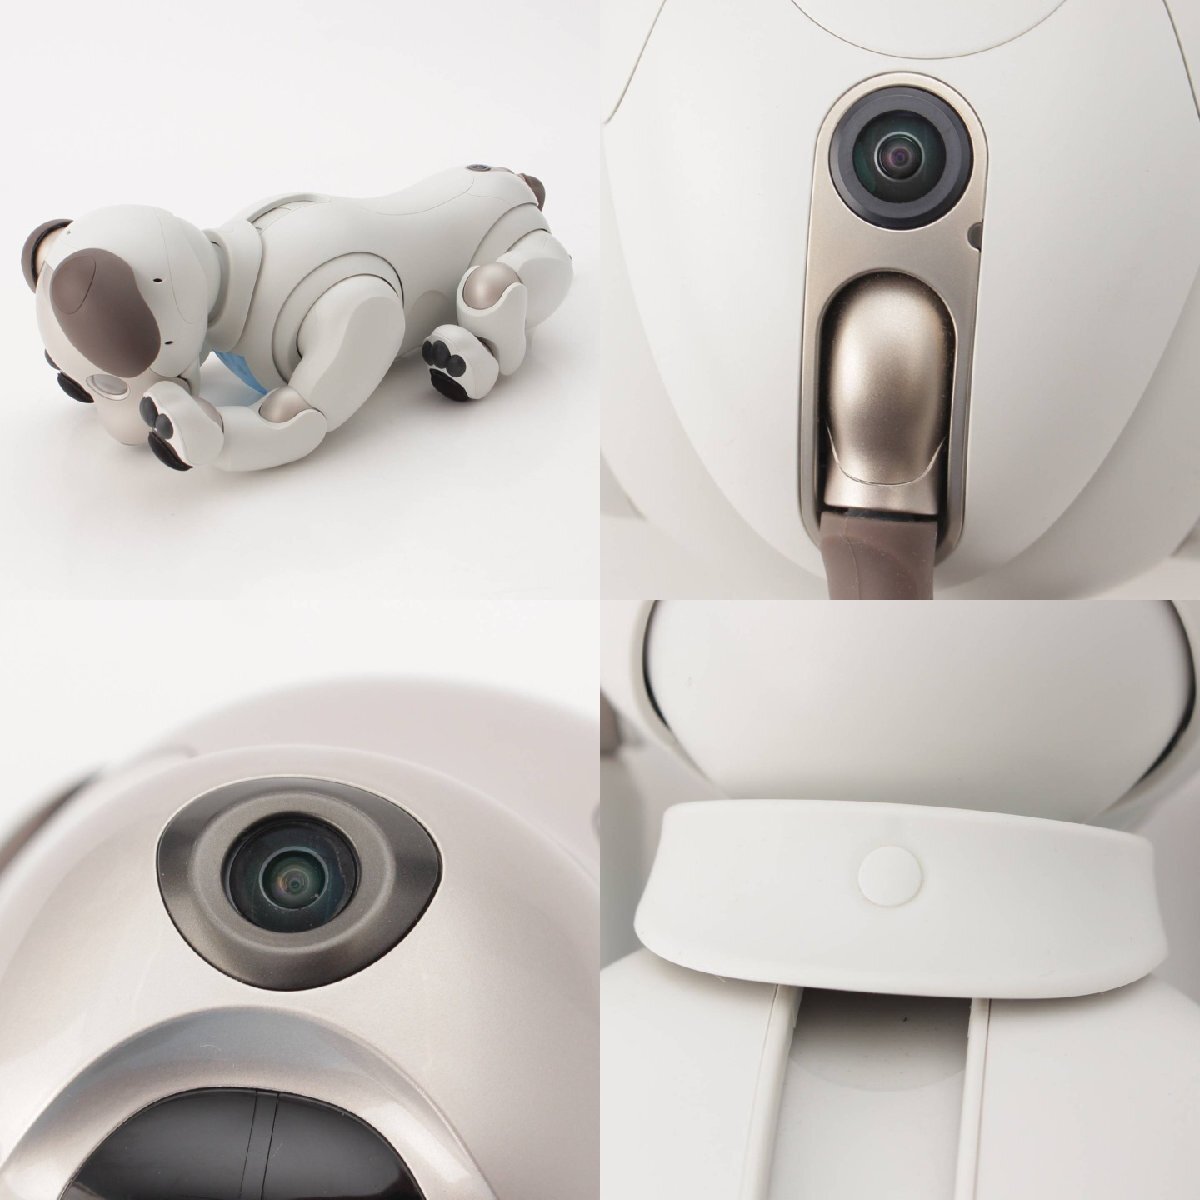 [ Sony ]SONY aibo dog type virtual pet robot ERS-1000 Basic white [ used ][ regular goods guarantee ]201684